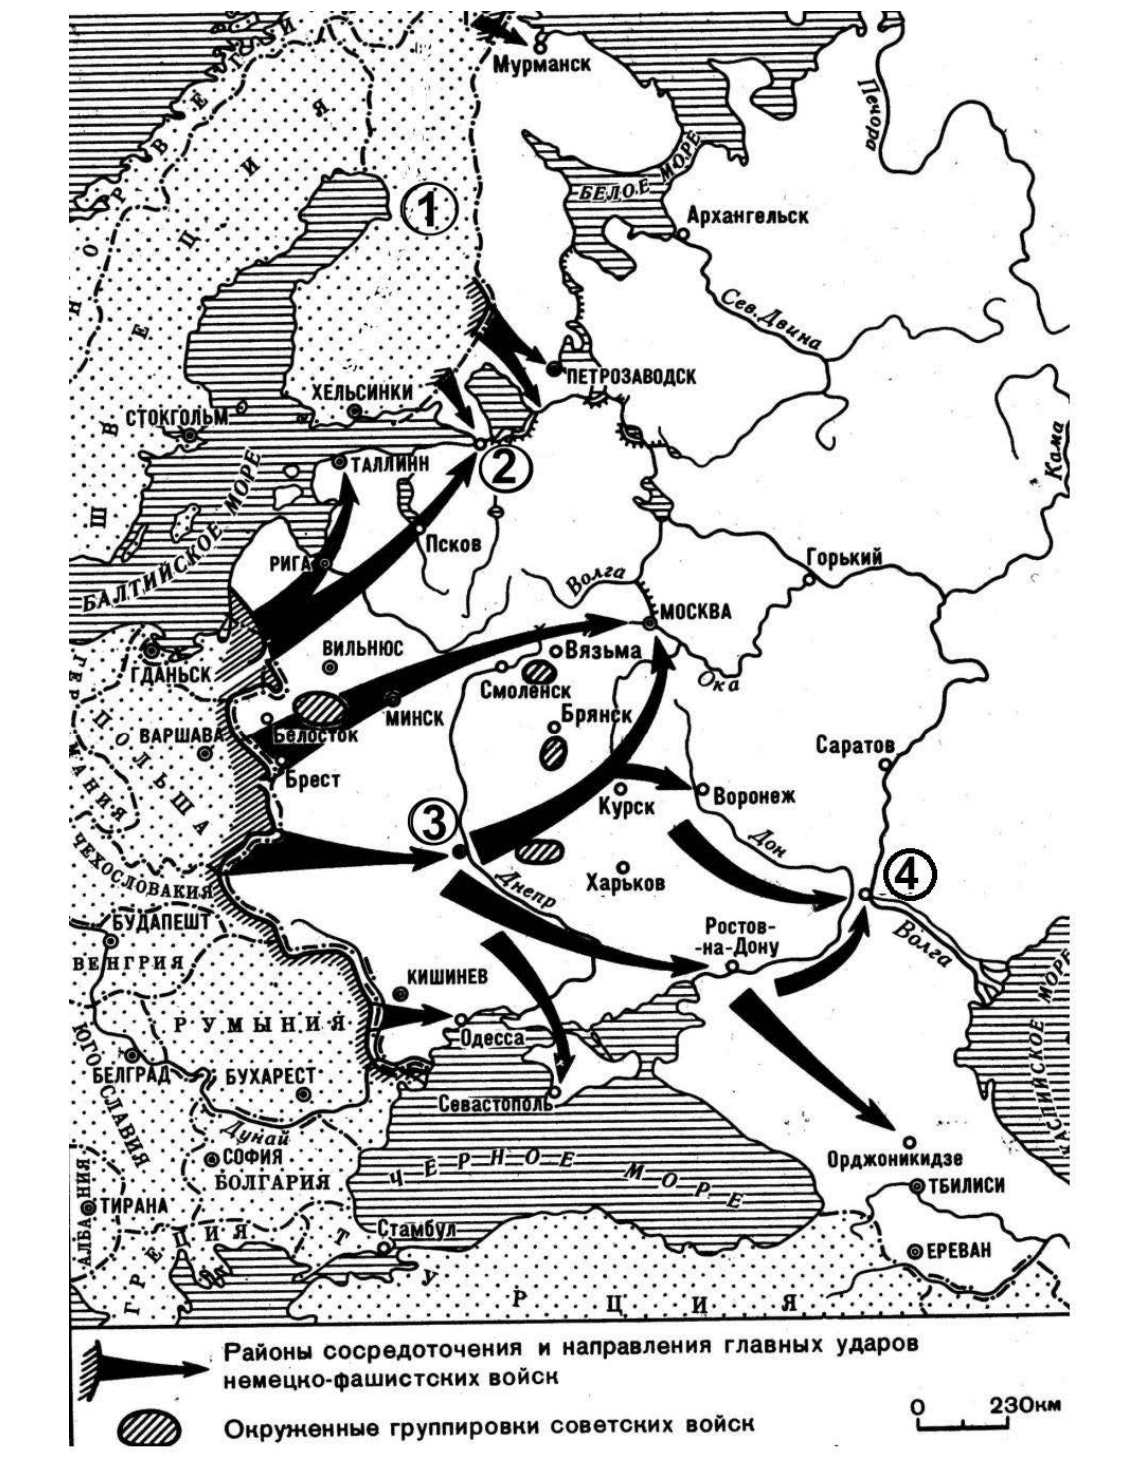 Название немецких нападений. Карта наступления фашистов на СССР 1941. Карта плана Барбаросса 1941. План нападения фашистской Германии 1941. План нападения СССР на Германию в 1941.